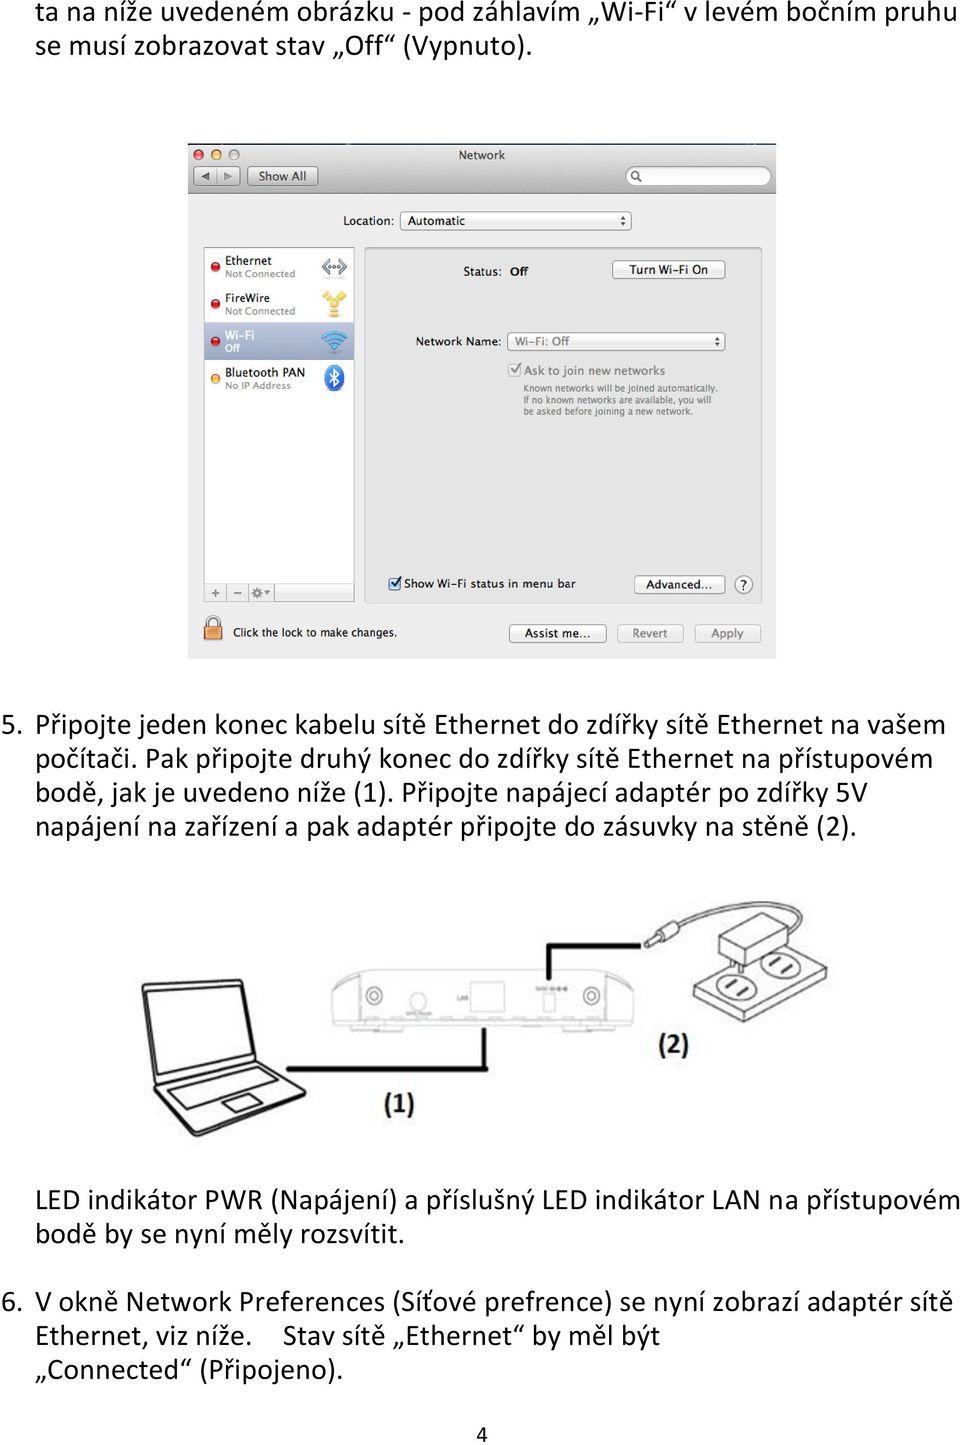 Pak připojte druhý konec do zdířky sítě Ethernet na přístupovém bodě, jak je uvedeno níže (1).